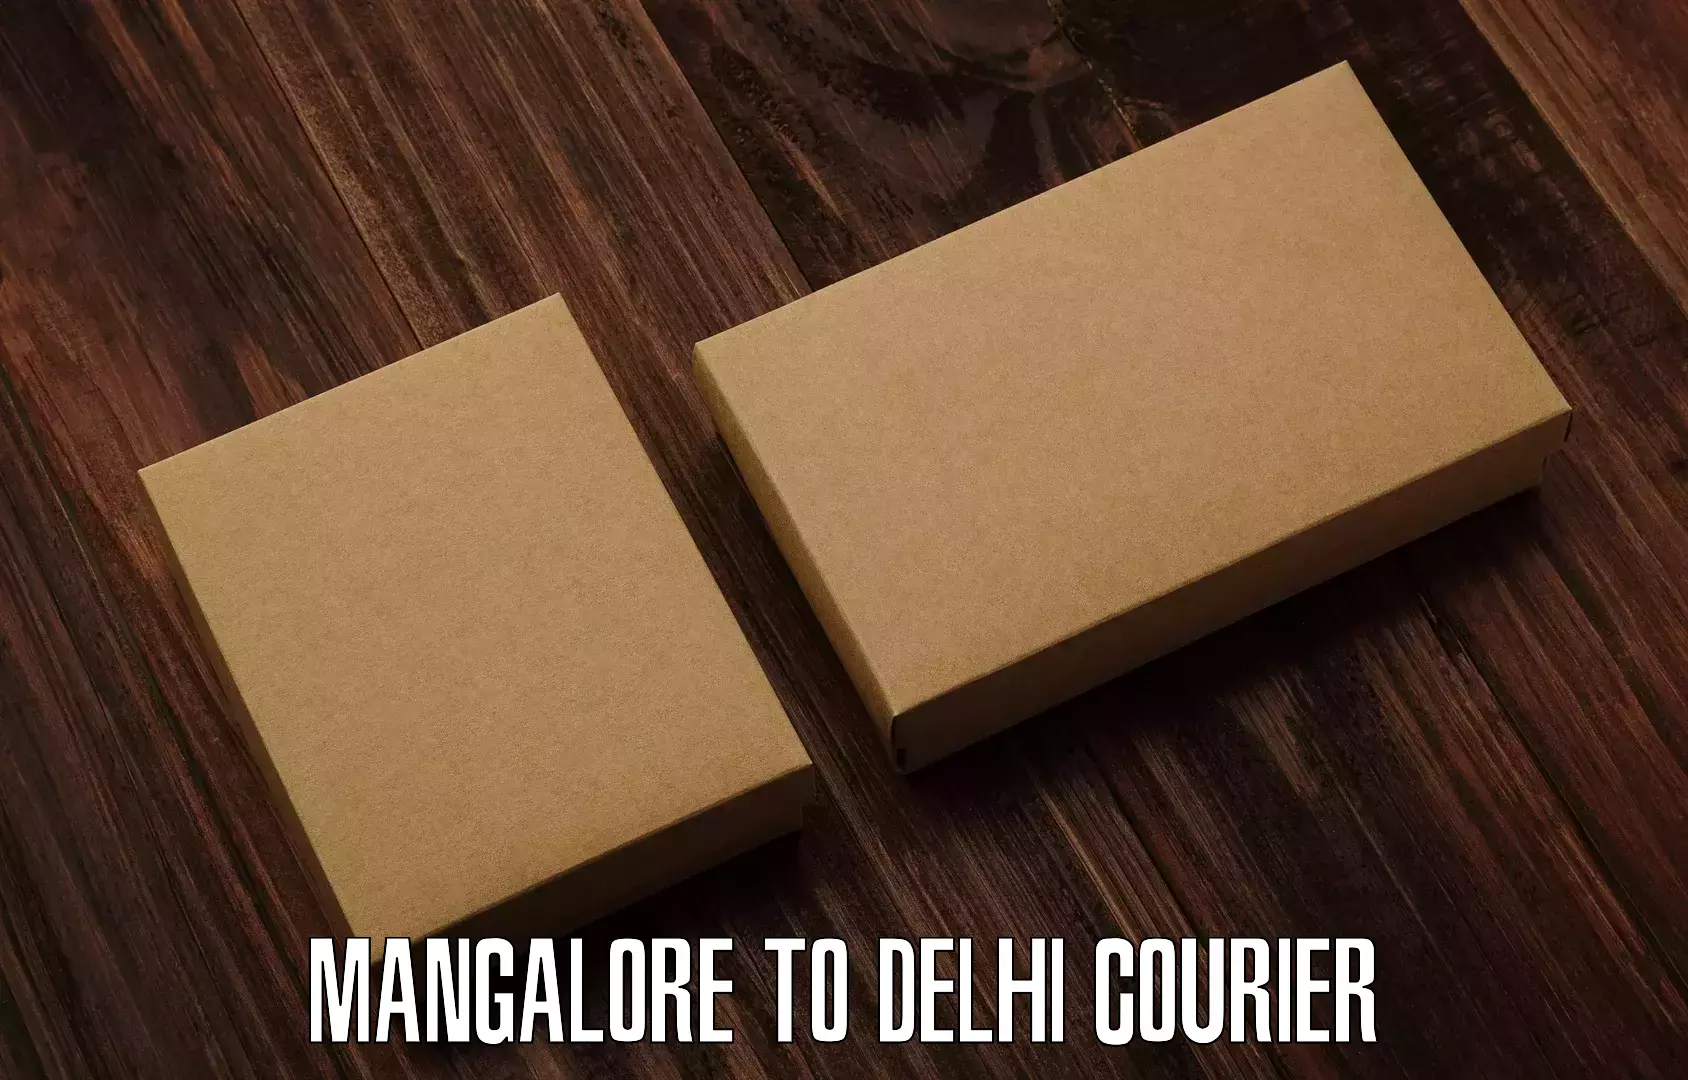 24-hour courier service Mangalore to Delhi Technological University DTU